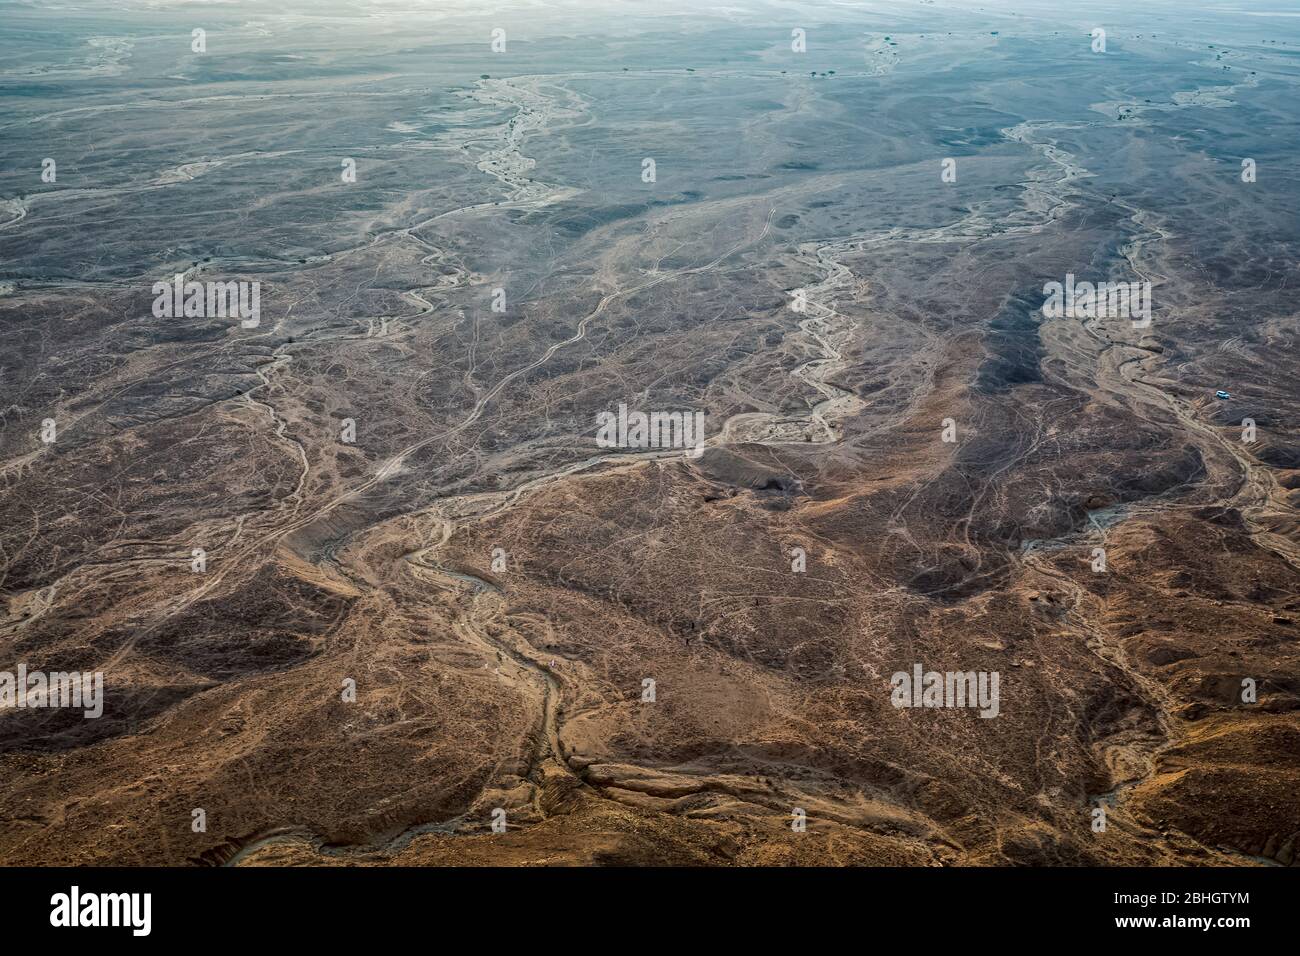 Edge of the World, un punto di riferimento naturale e popolare destinazione turistica vicino Riyadh -Arabia Saudita. Foto Stock